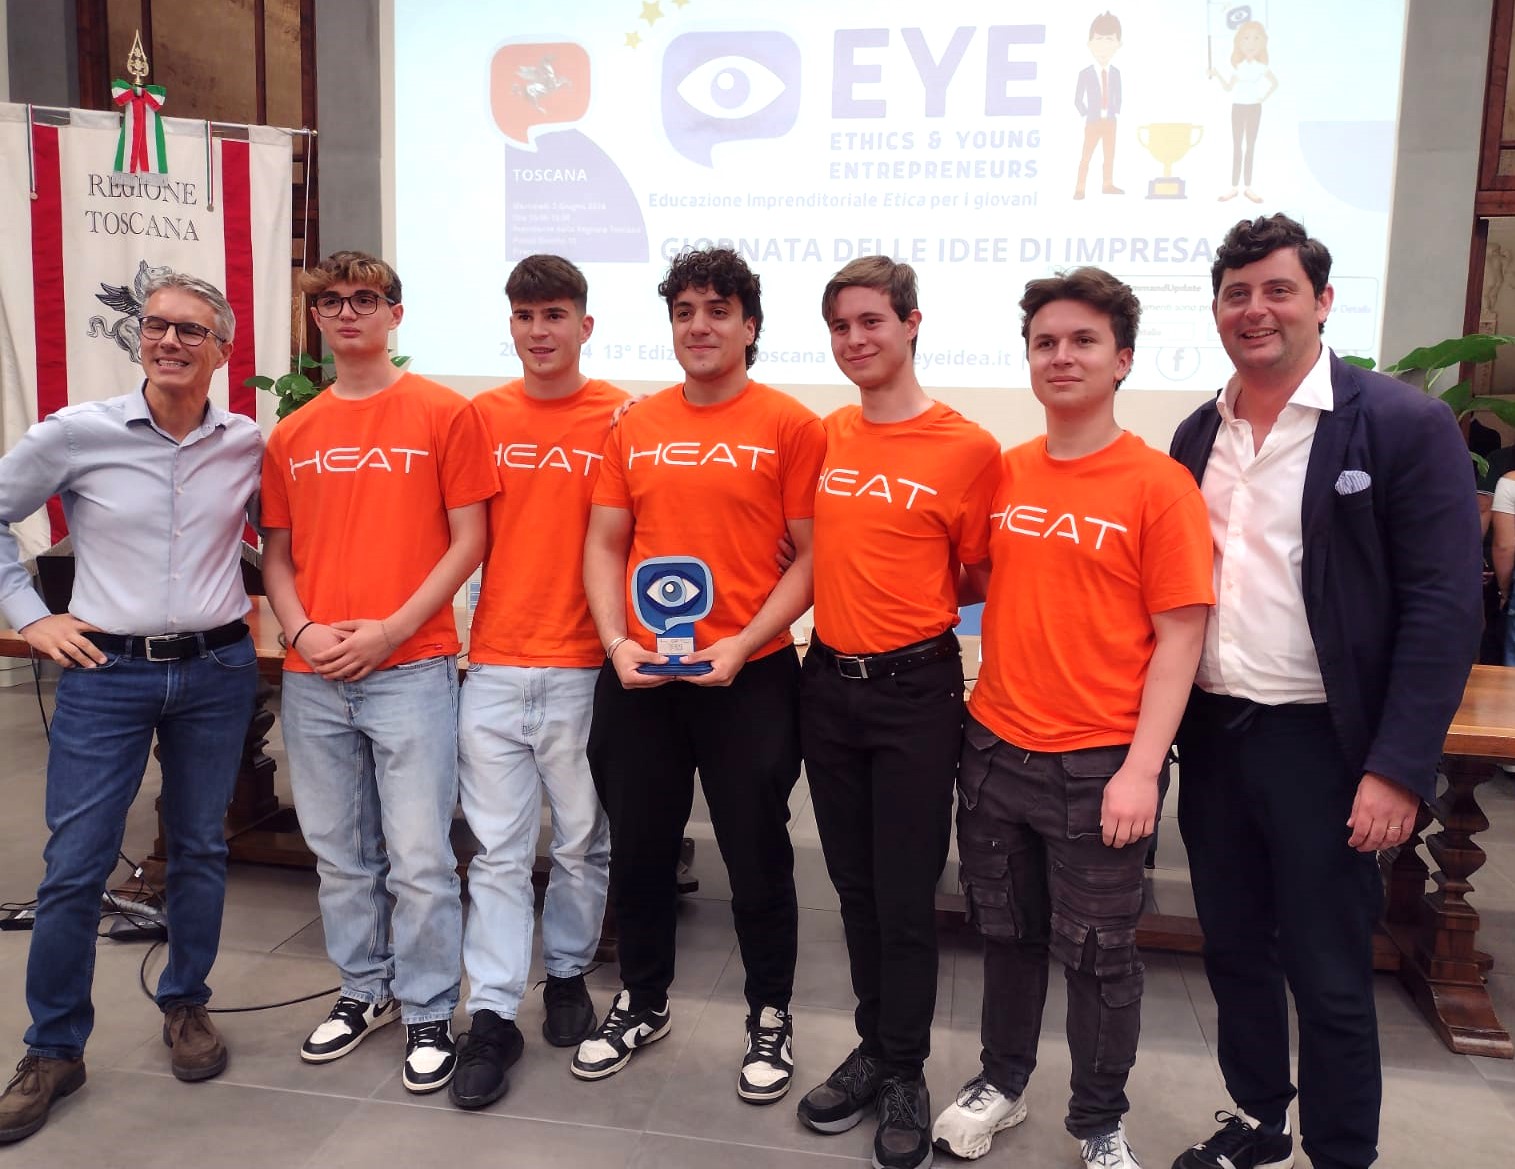 Trofeo Eye Toscana per giovani studenti: vince Heat, appendiabiti riscaldabile